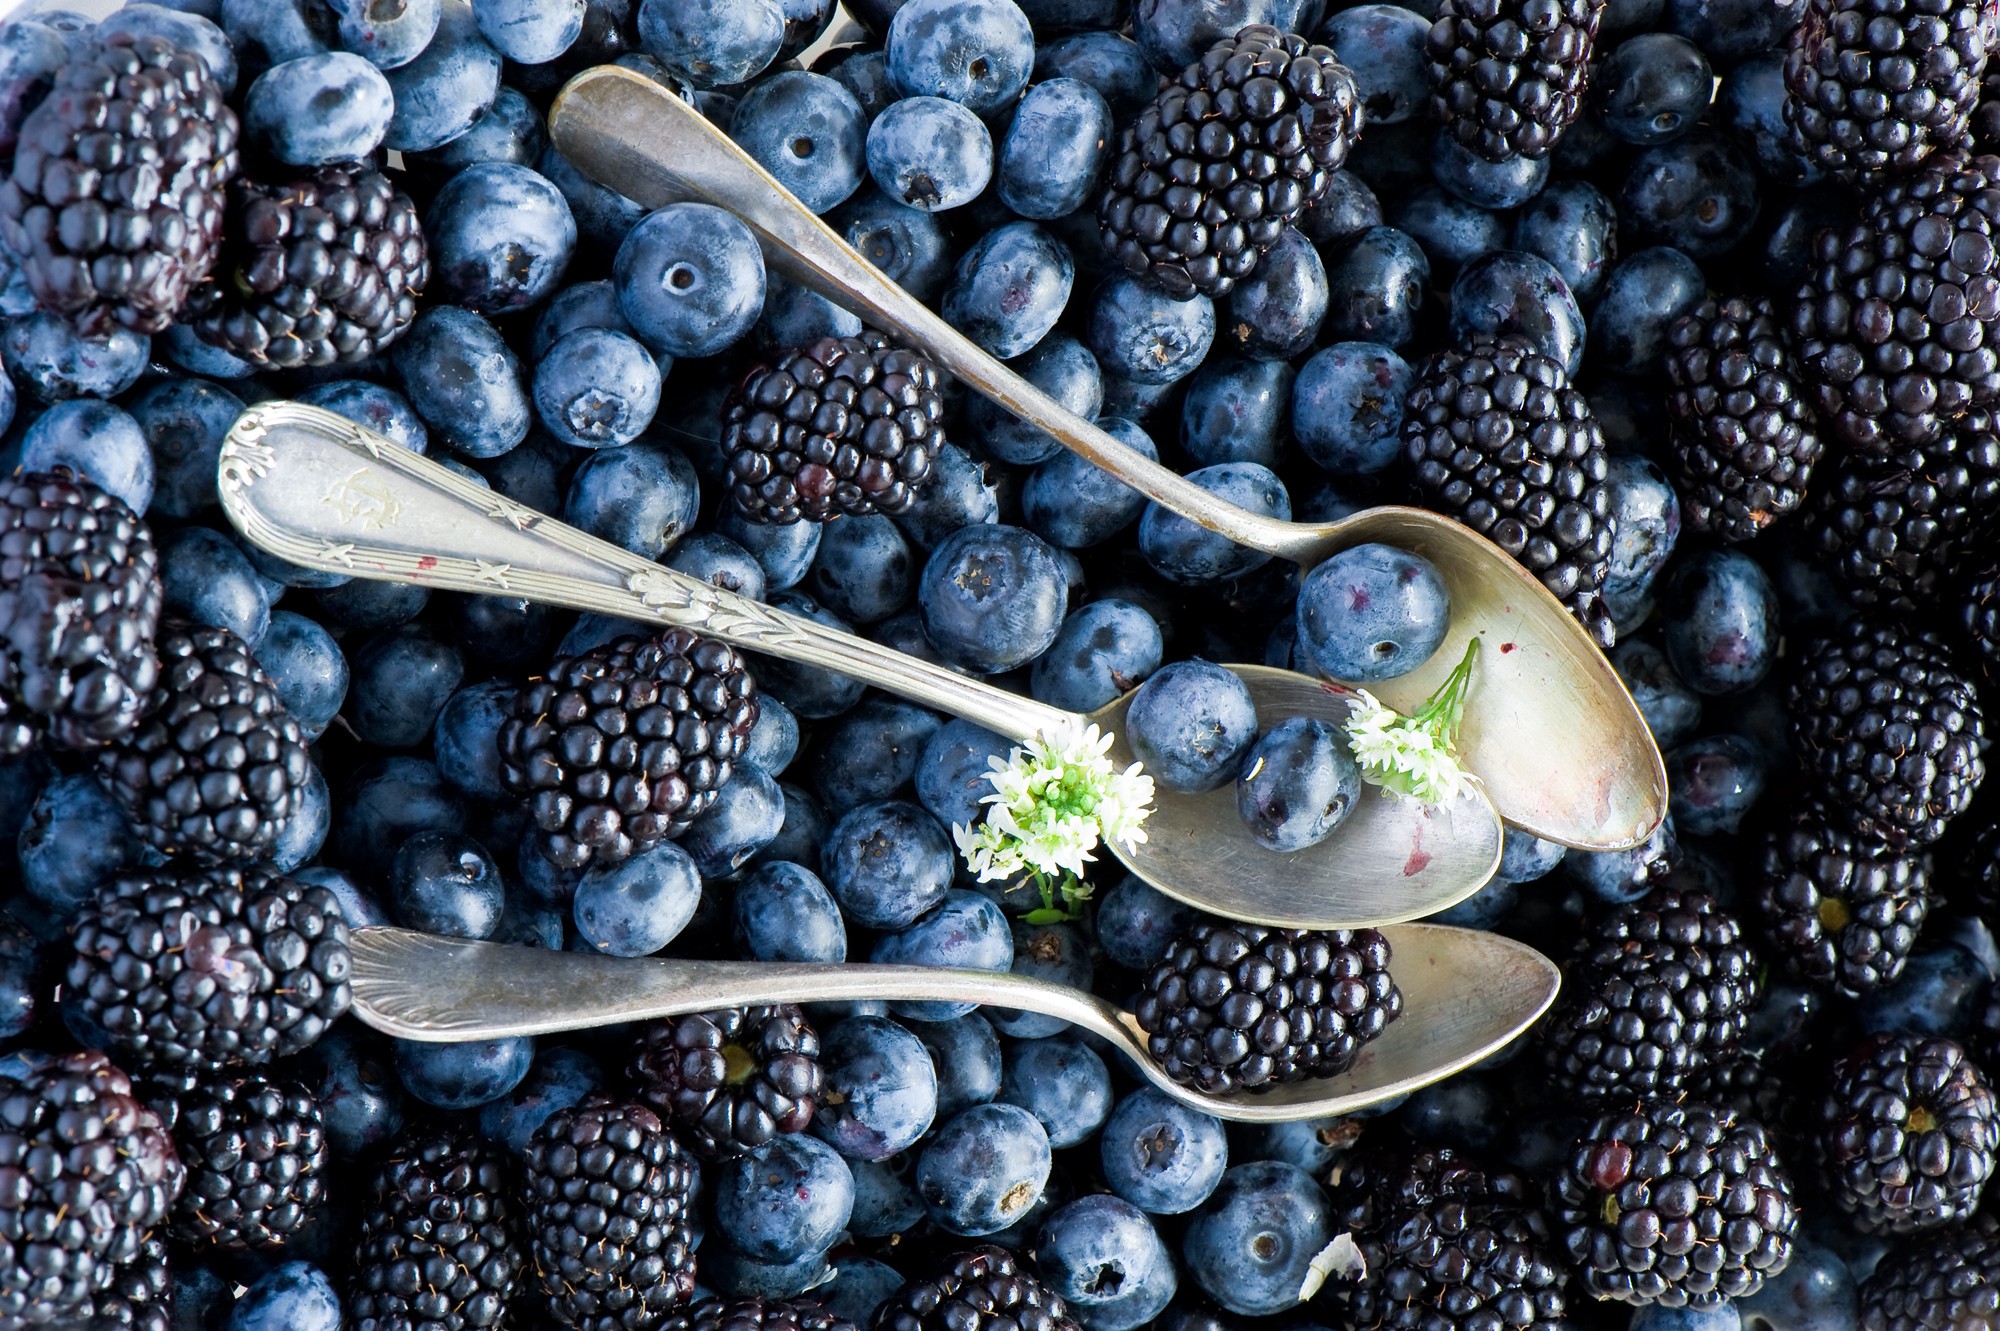 General 2000x1331 blueberries food spoon berries blackberries fruit blue